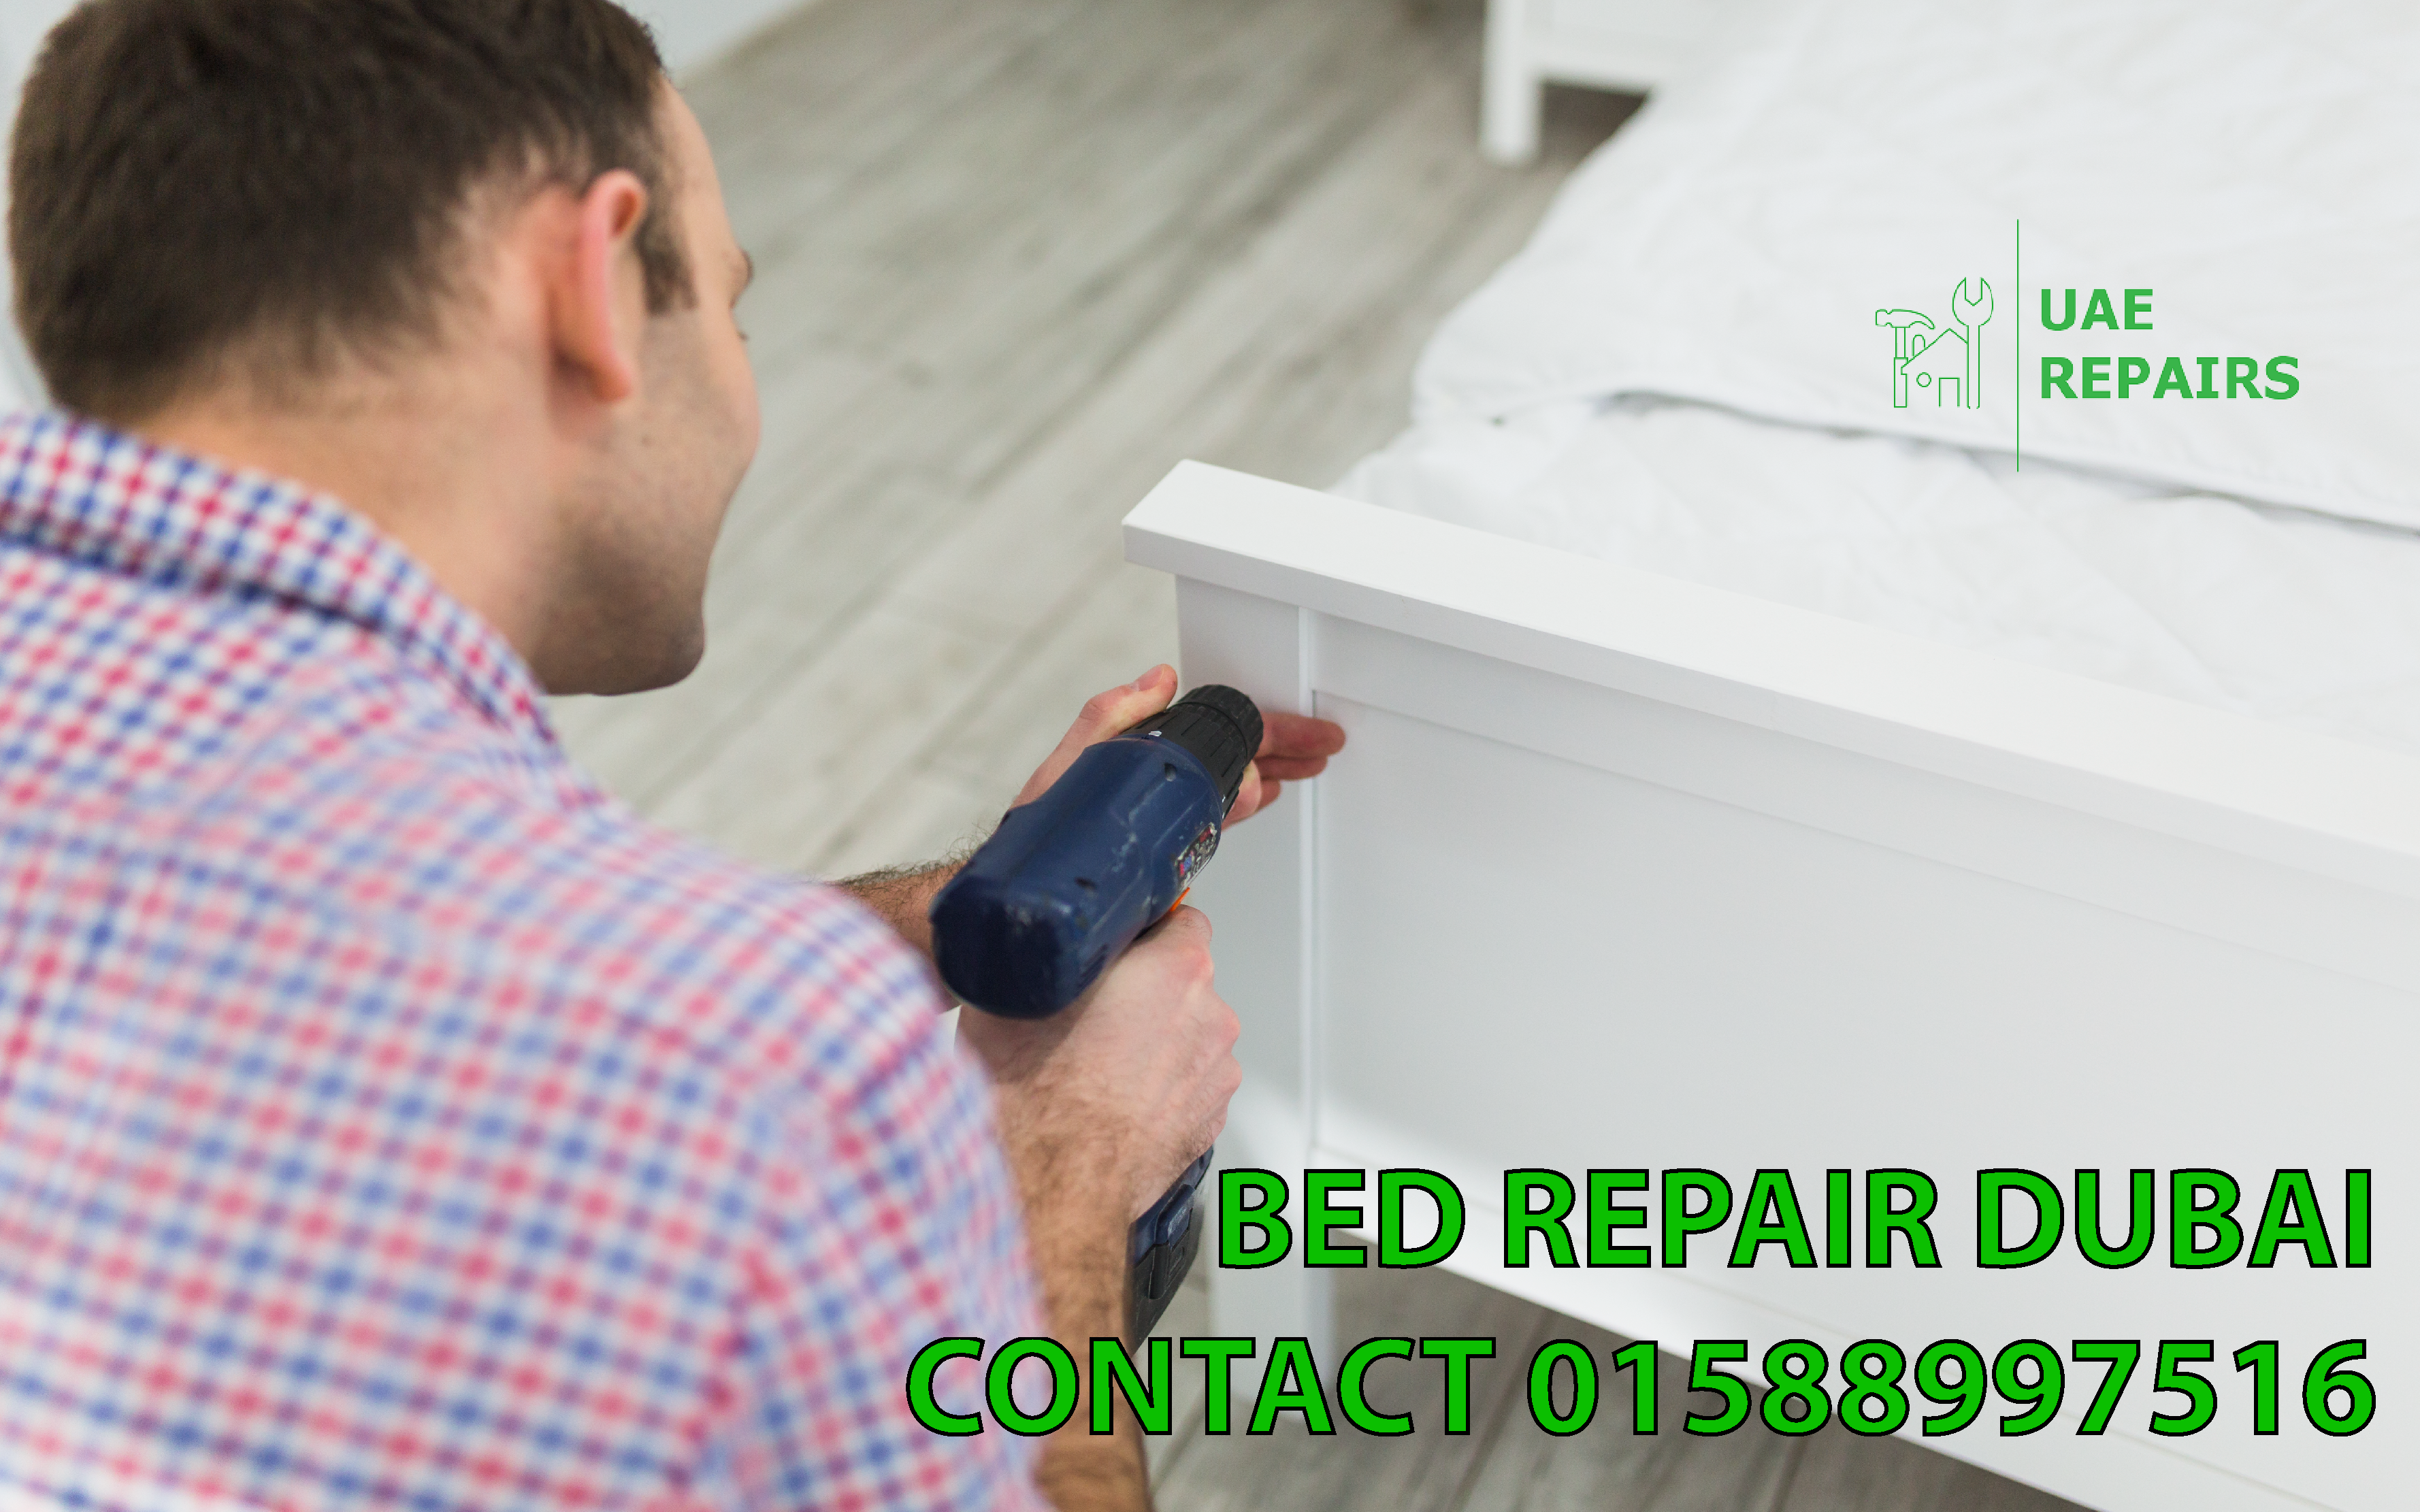 Bed Repair Service in Dubai by UAE Repairs